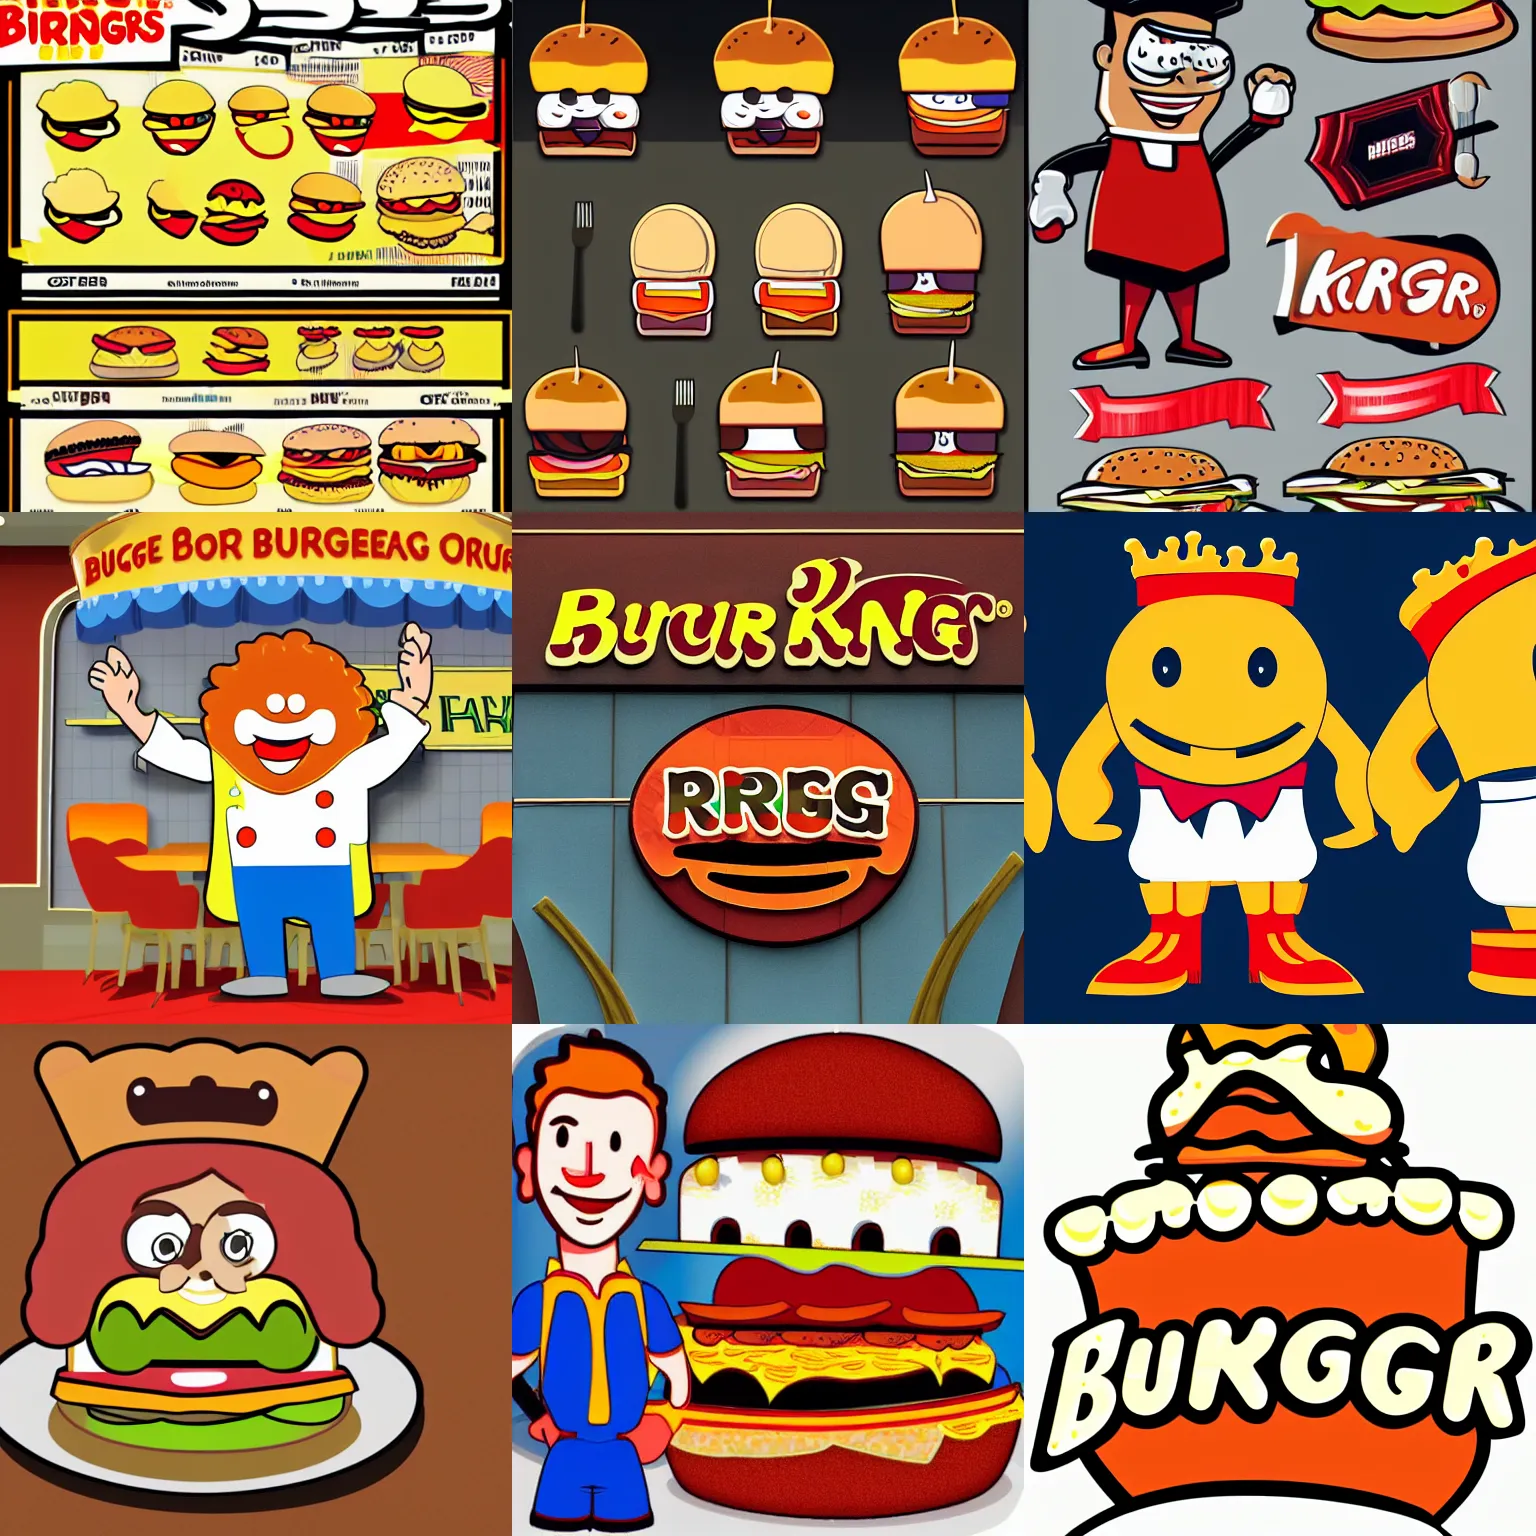 Prompt: restaurant mascot of a burger king cartoon design